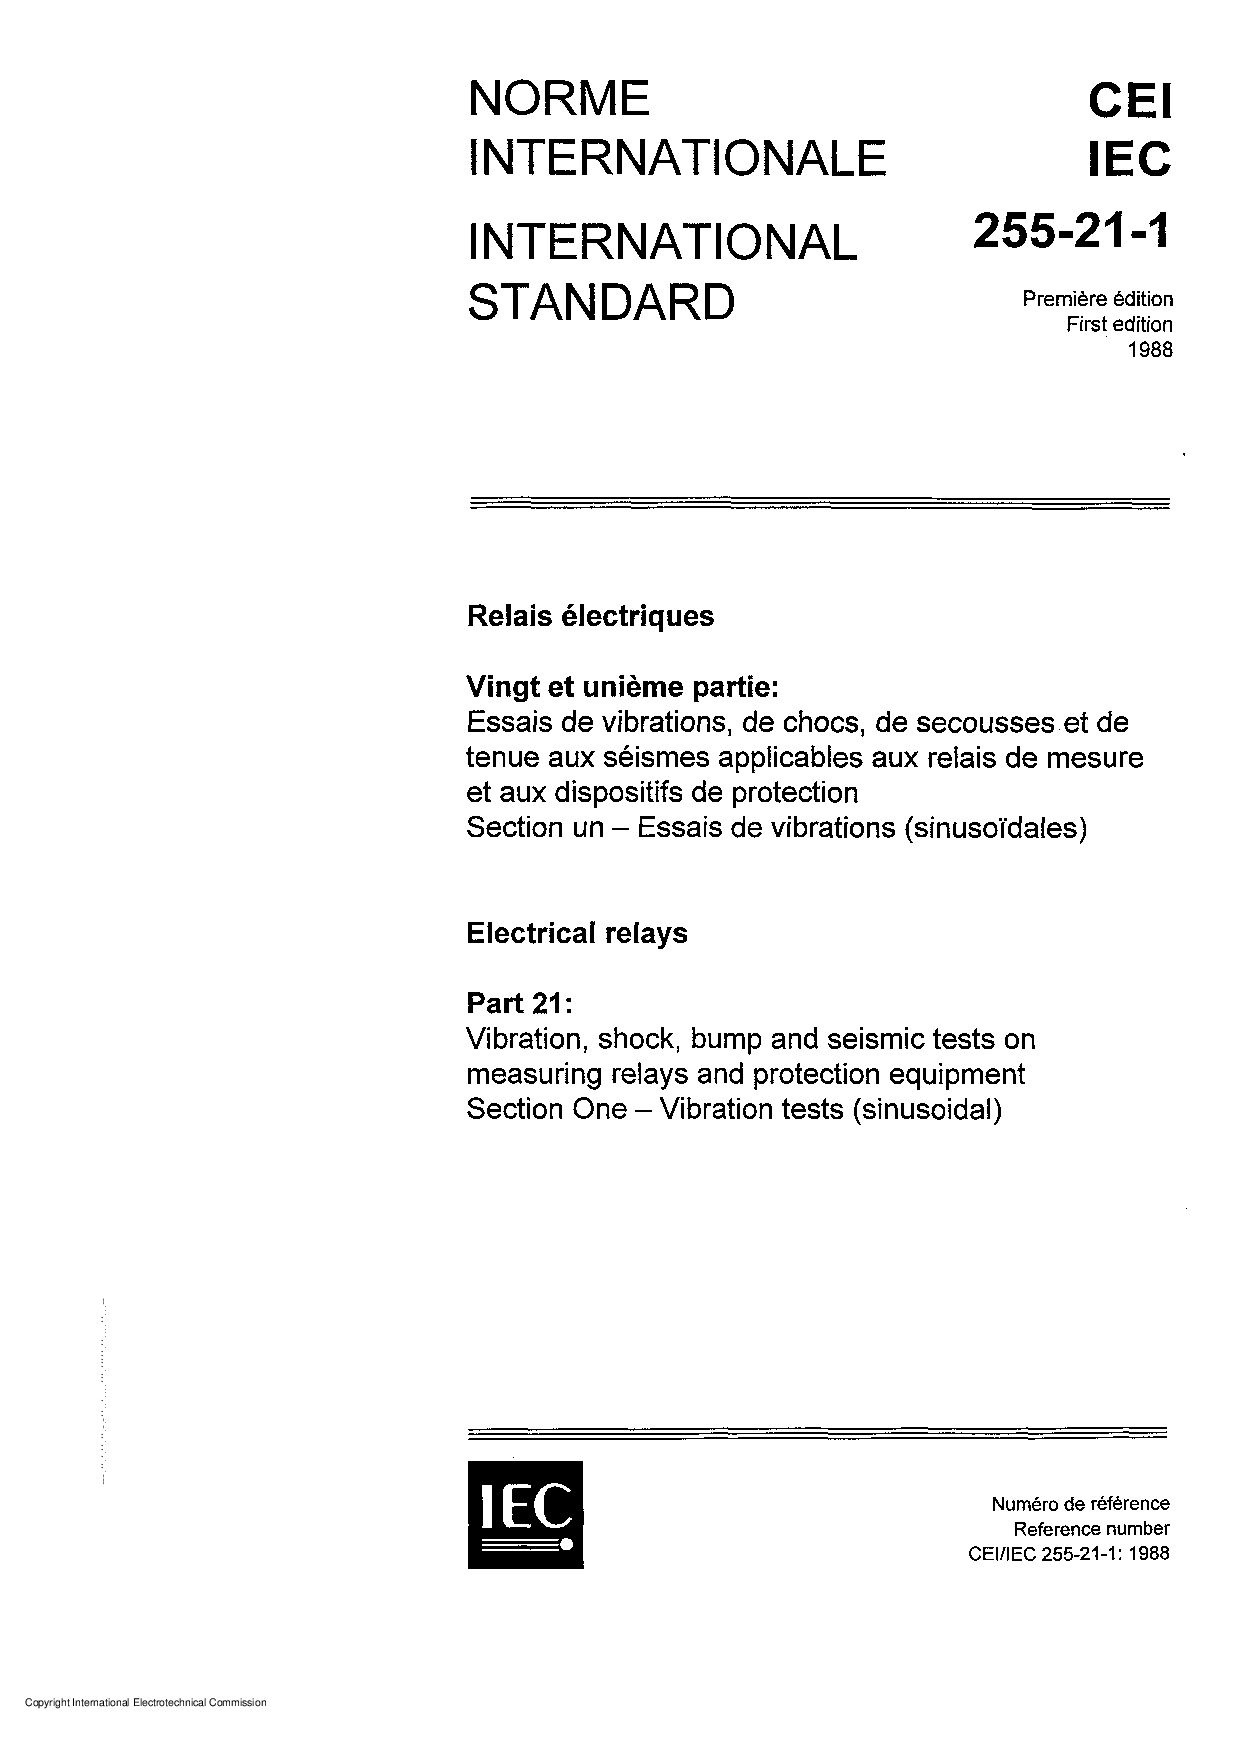 IEC 60255-21-1:1988